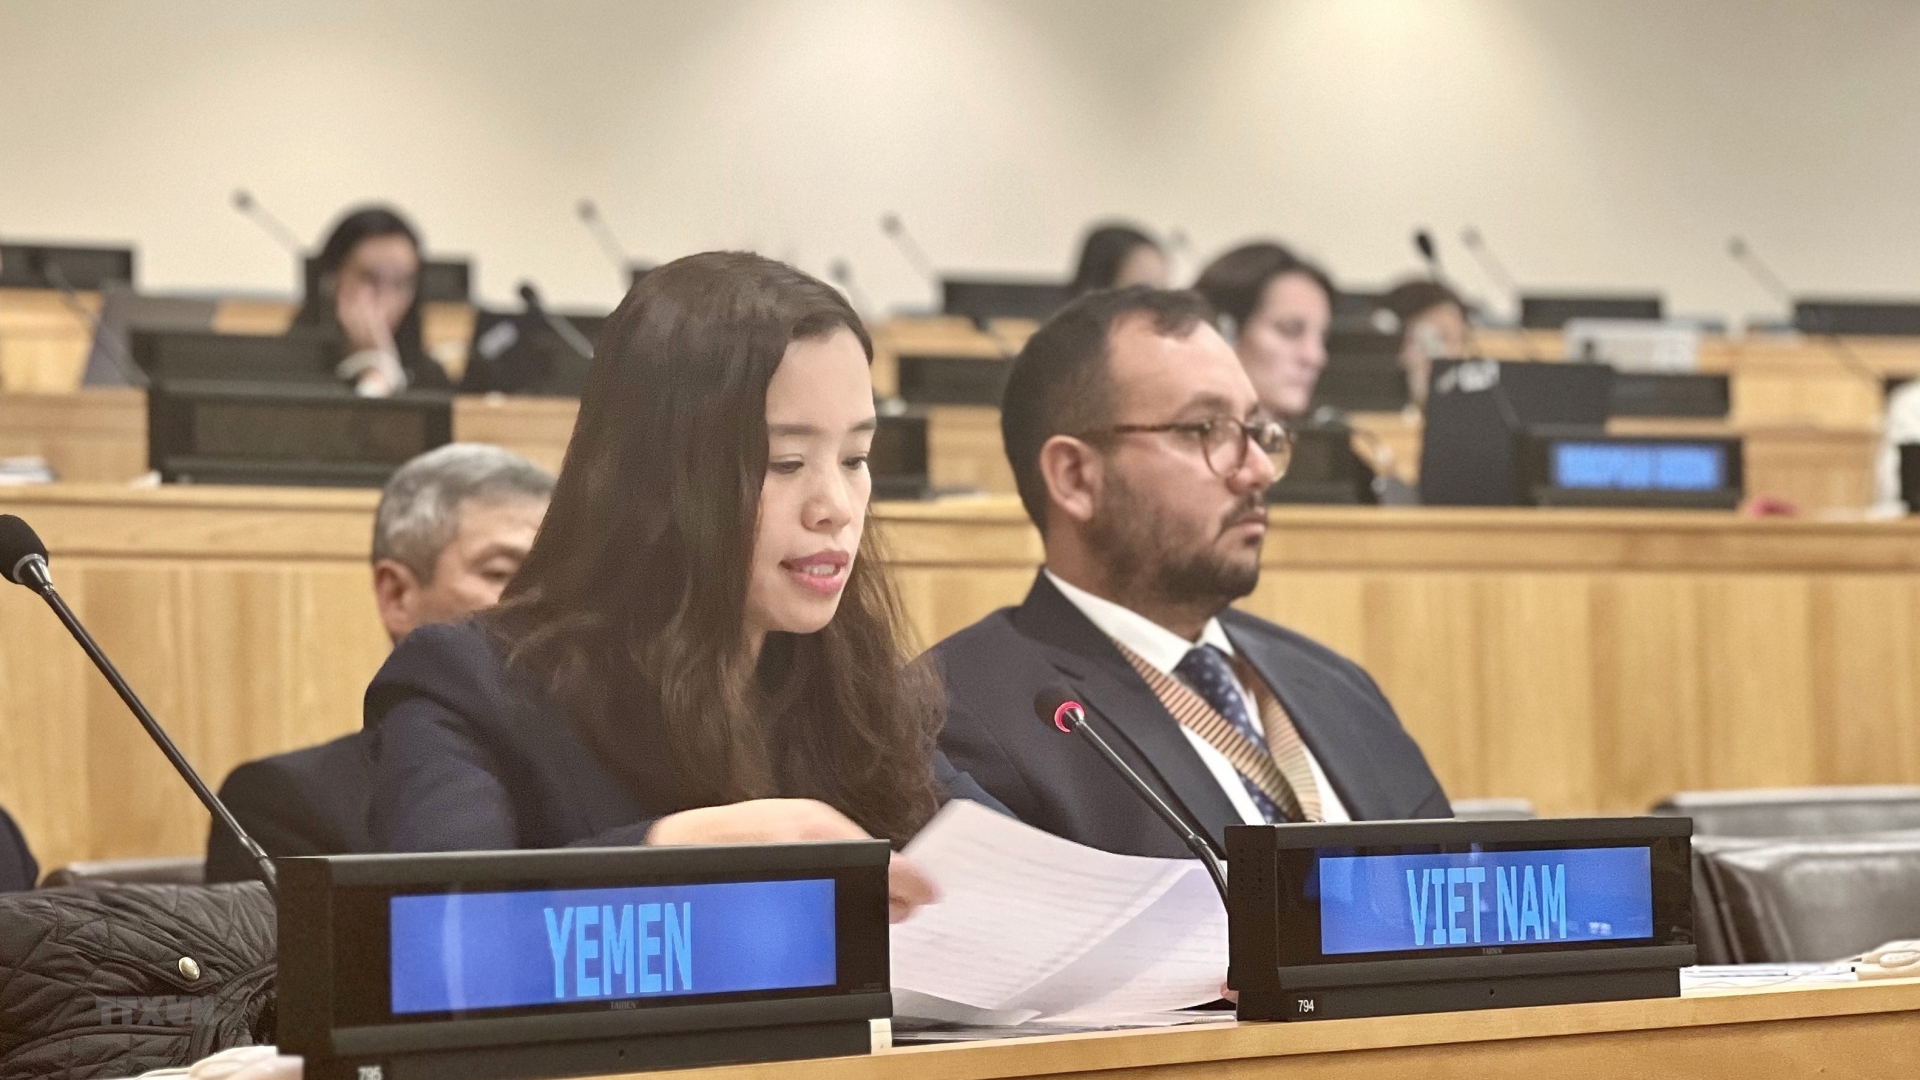 越南常驻联合国代表团副团长、公使衔参赞黎氏明钗在会议发言。图自越通社